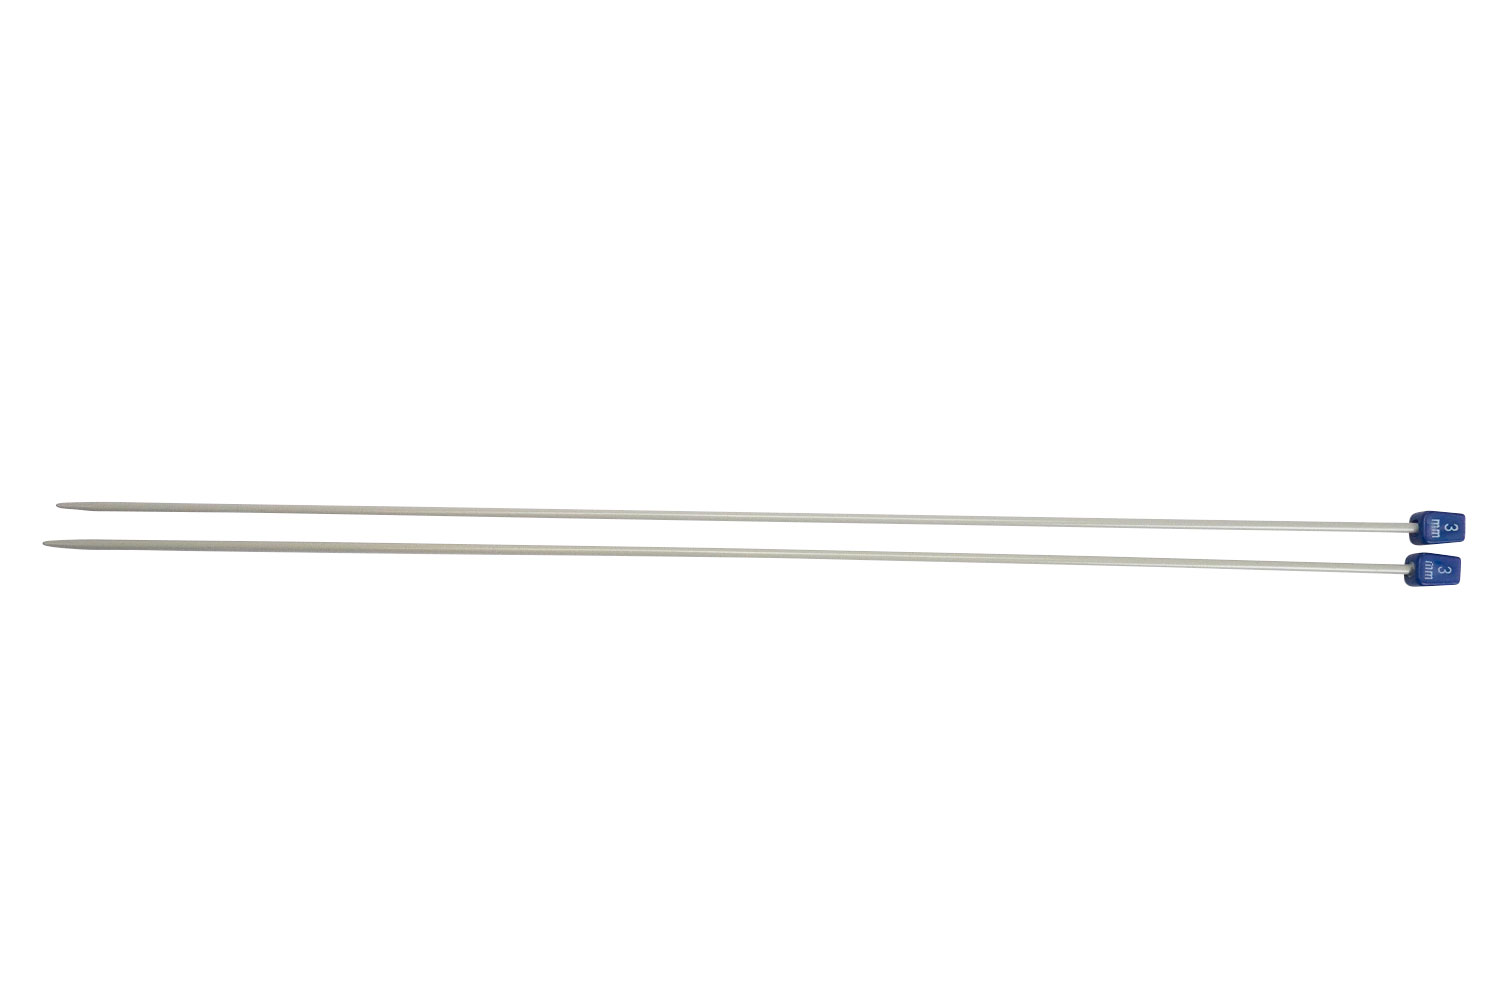 Aiguilles à tricoter - Longueur 40 cm - Accessoires Tricot - 10 Doigts